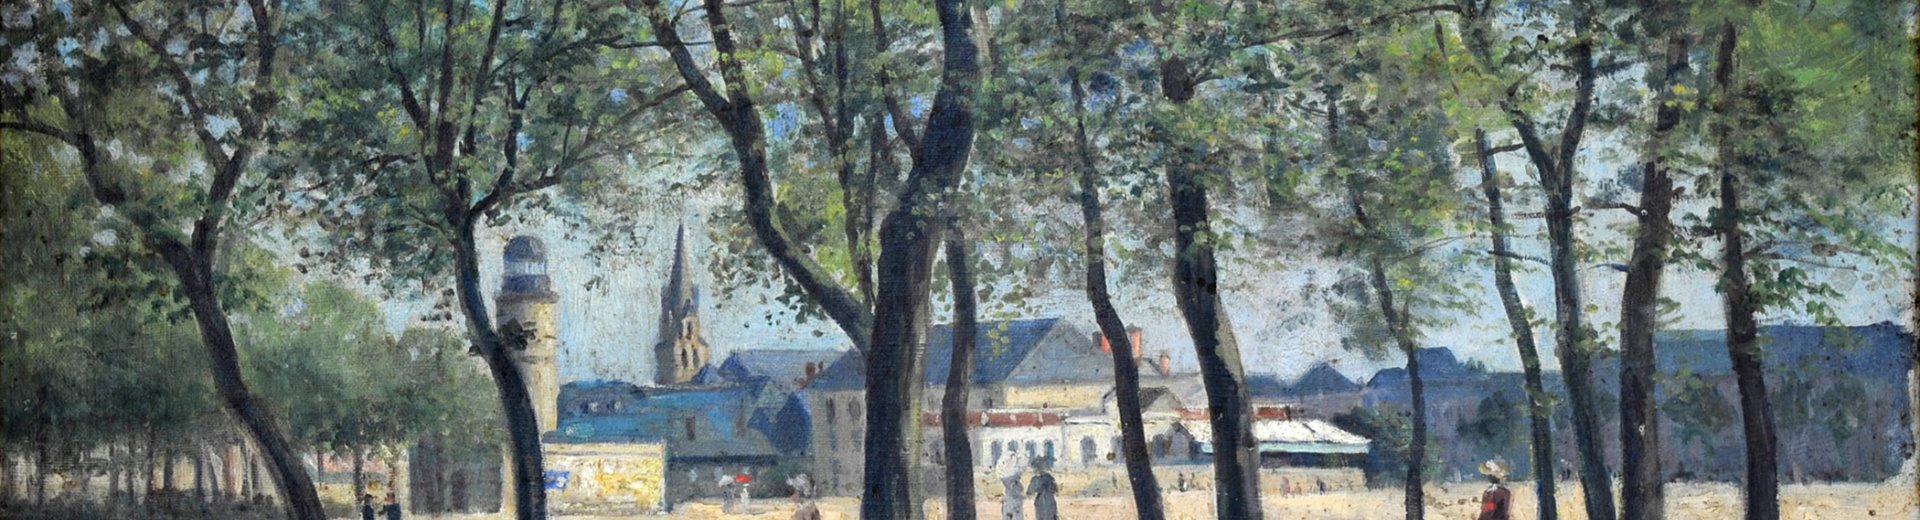 La Guierle en 1900, huile sur toile de Gaston de Laperrière (attribution supposée), 1900.